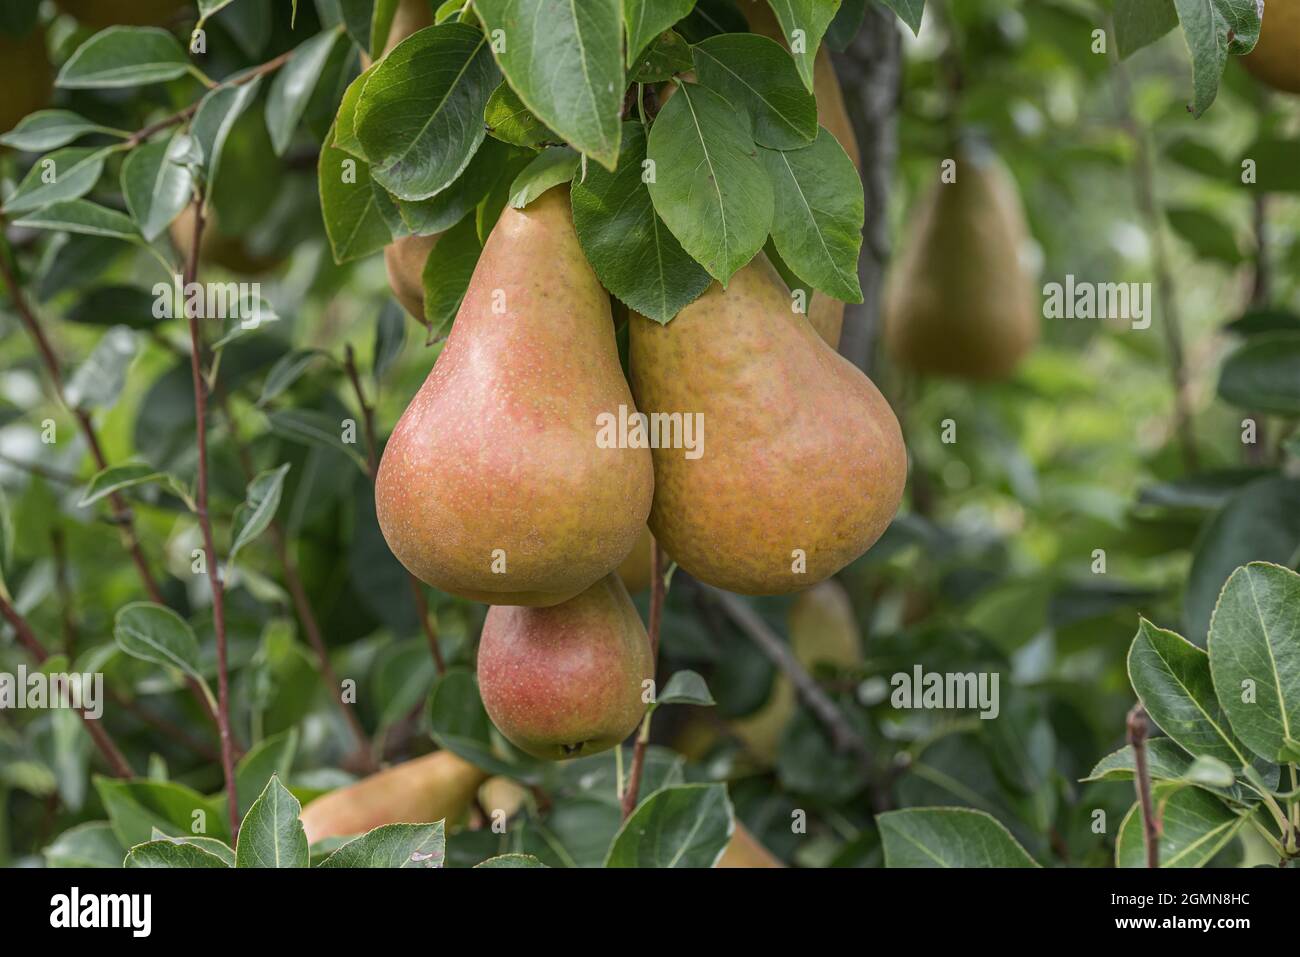 Common pear (Pyrus communis 'Durondeau de Tongre', Pyrus communis Durondeau de Tongre), pear on a tree, cultivar Durondeau de Tongre Stock Photo